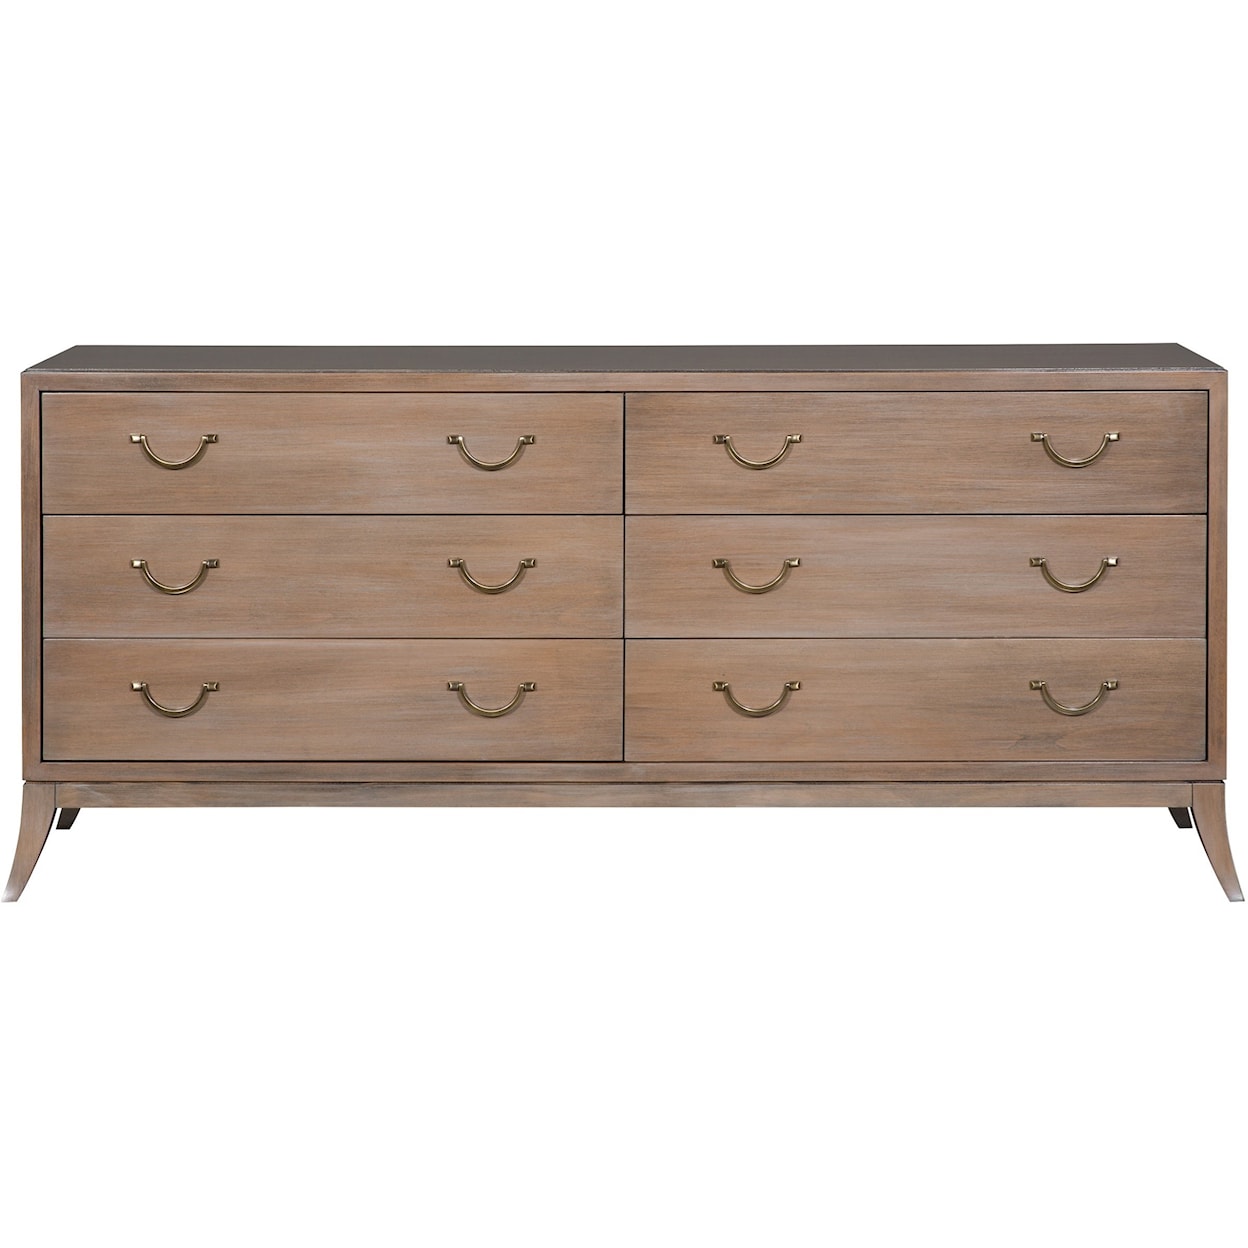 Vanguard Furniture Make it Yours Bedroom Mcguire Dresser